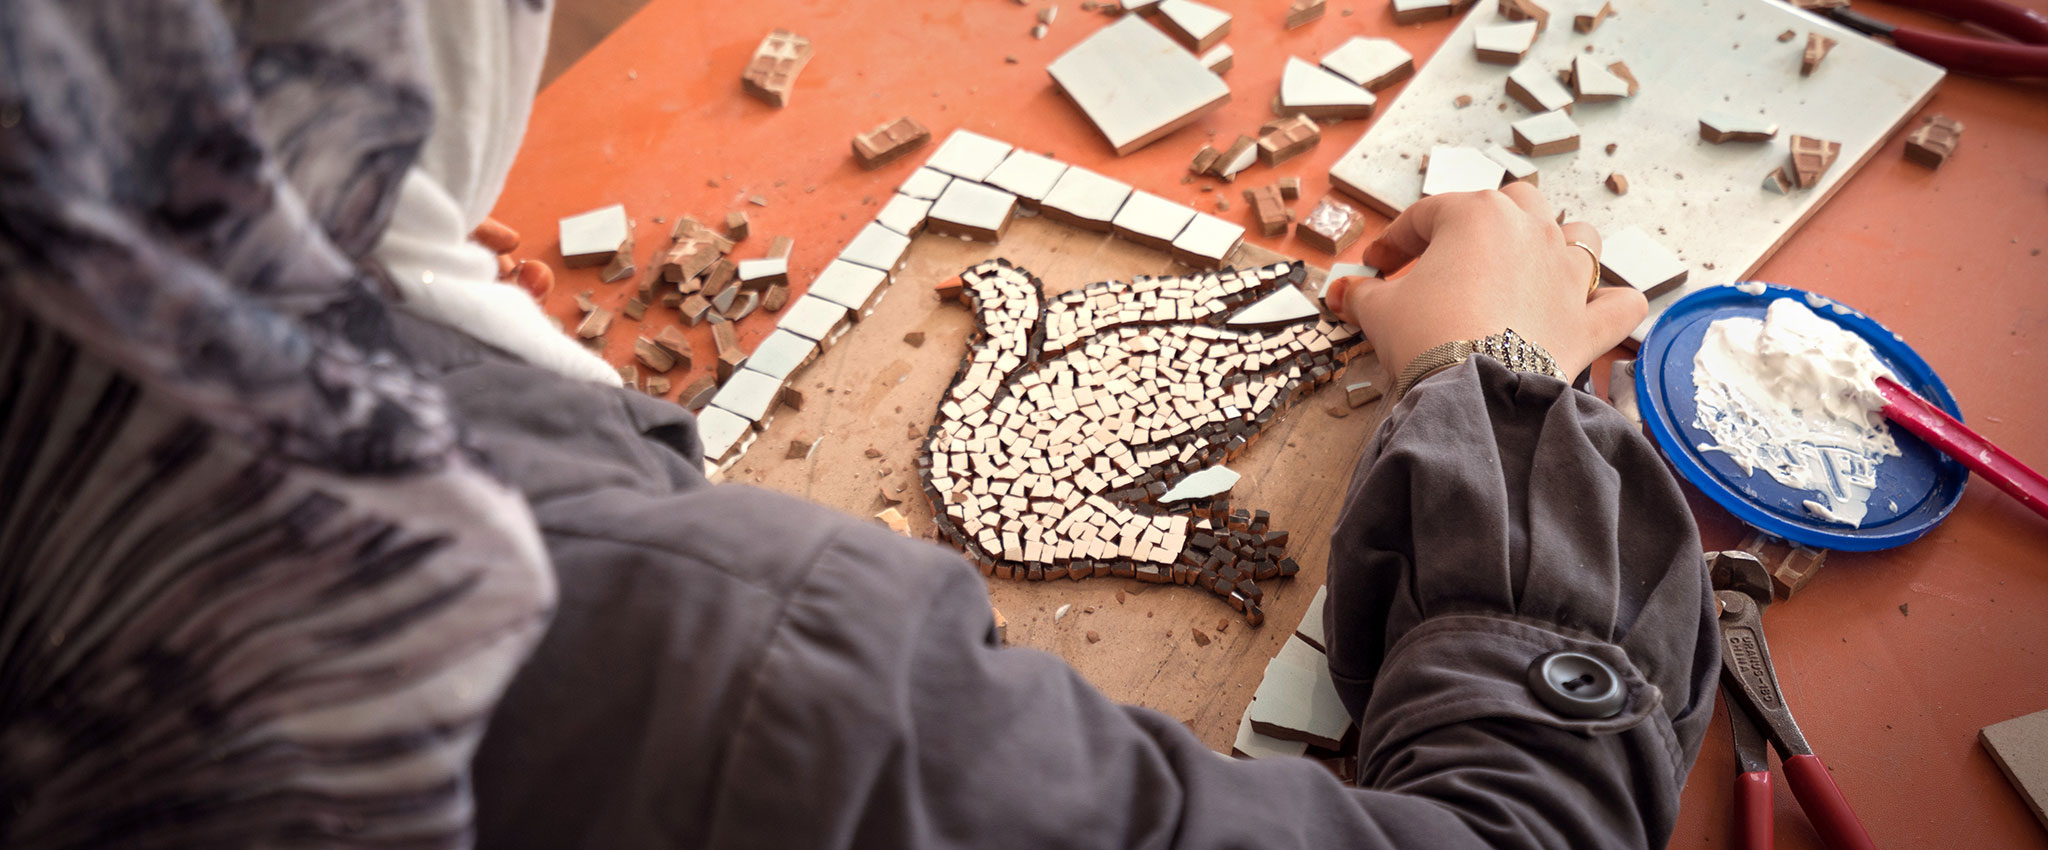 Campamento de personas refugiadas de Za’atari (Jordania). 2015. Una mujer diseña un mosaico con una paloma de la paz. ONU Mujeres brinda empoderamiento económico y programas de protección a las mujeres y las niñas en el campamento. Fotografía: ONU Mujeres/Christopher Herwig